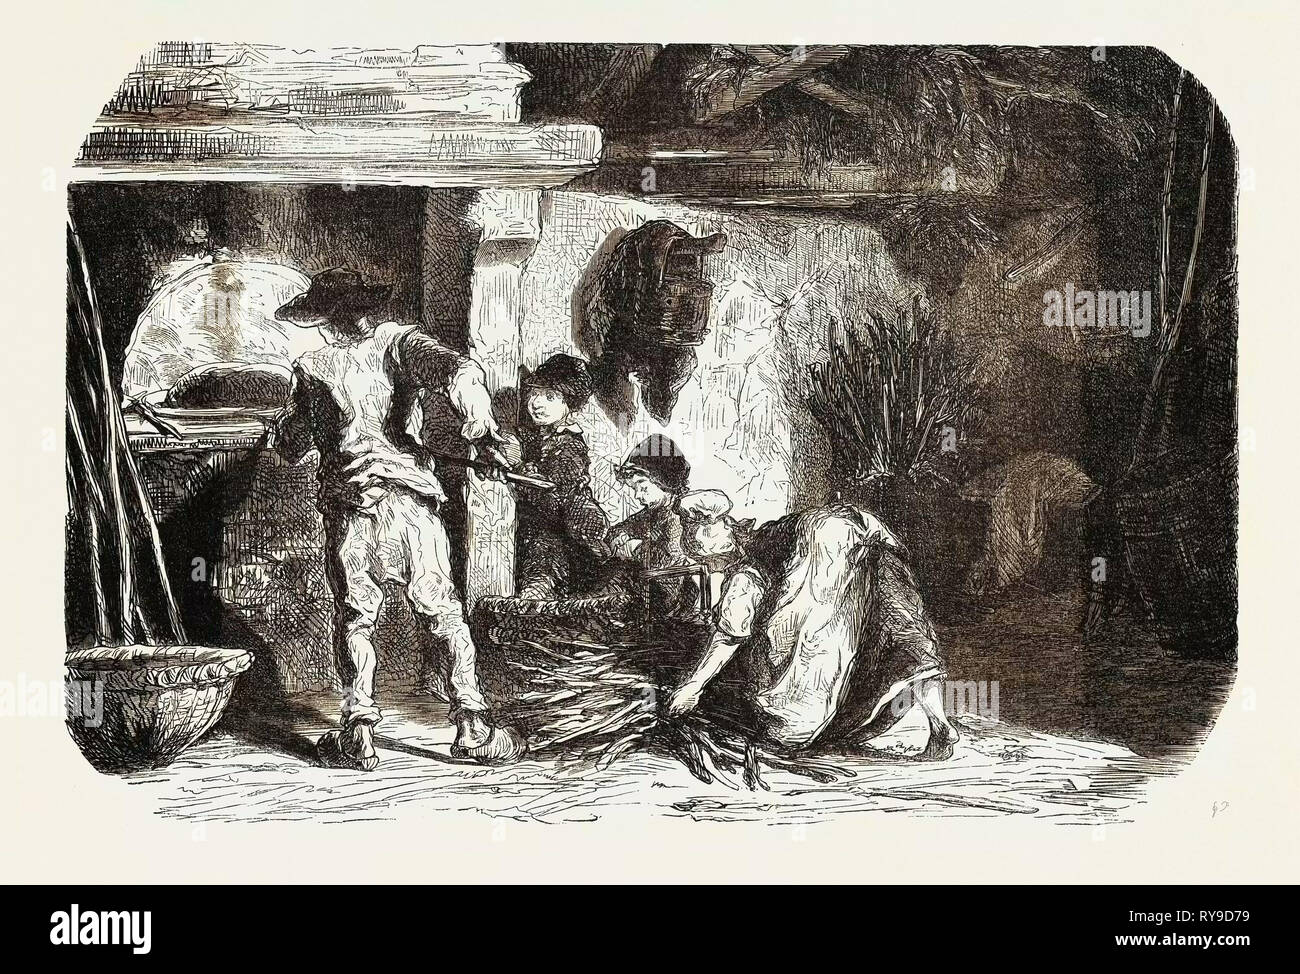 Escenas de la vida del país: el bakehouse. Estudios realizados por Damourette 1855 grabado. Foto de stock